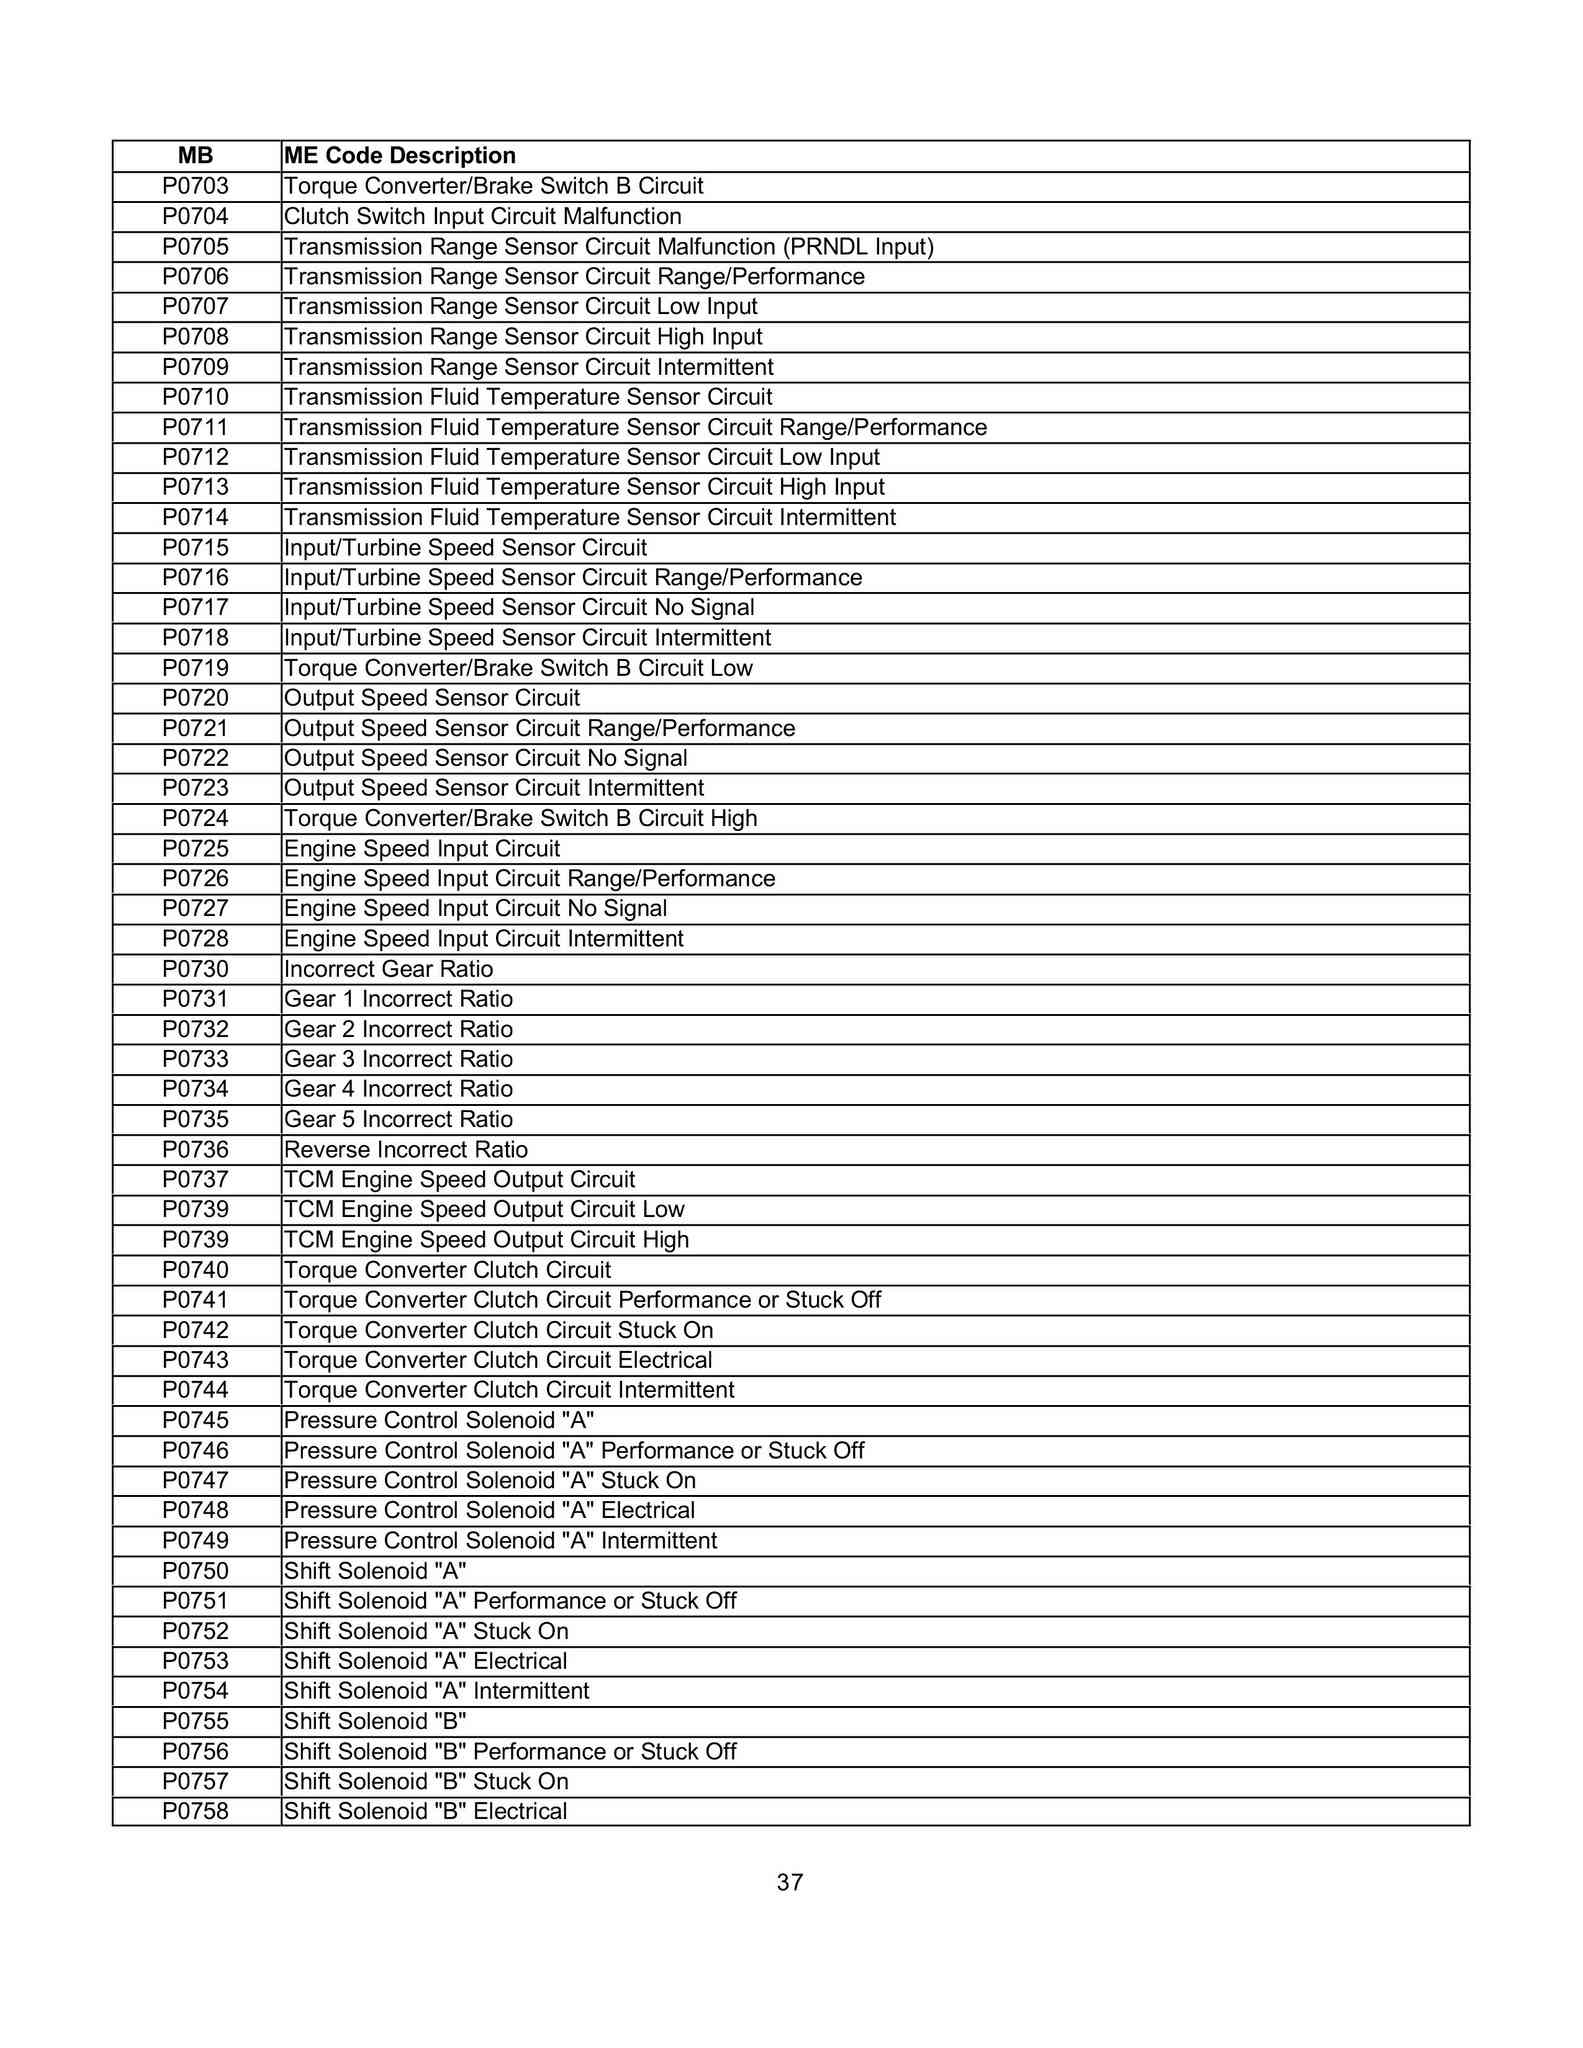 Lista de Códigos de falhas (fault codes) Mercedes-Benz 003712